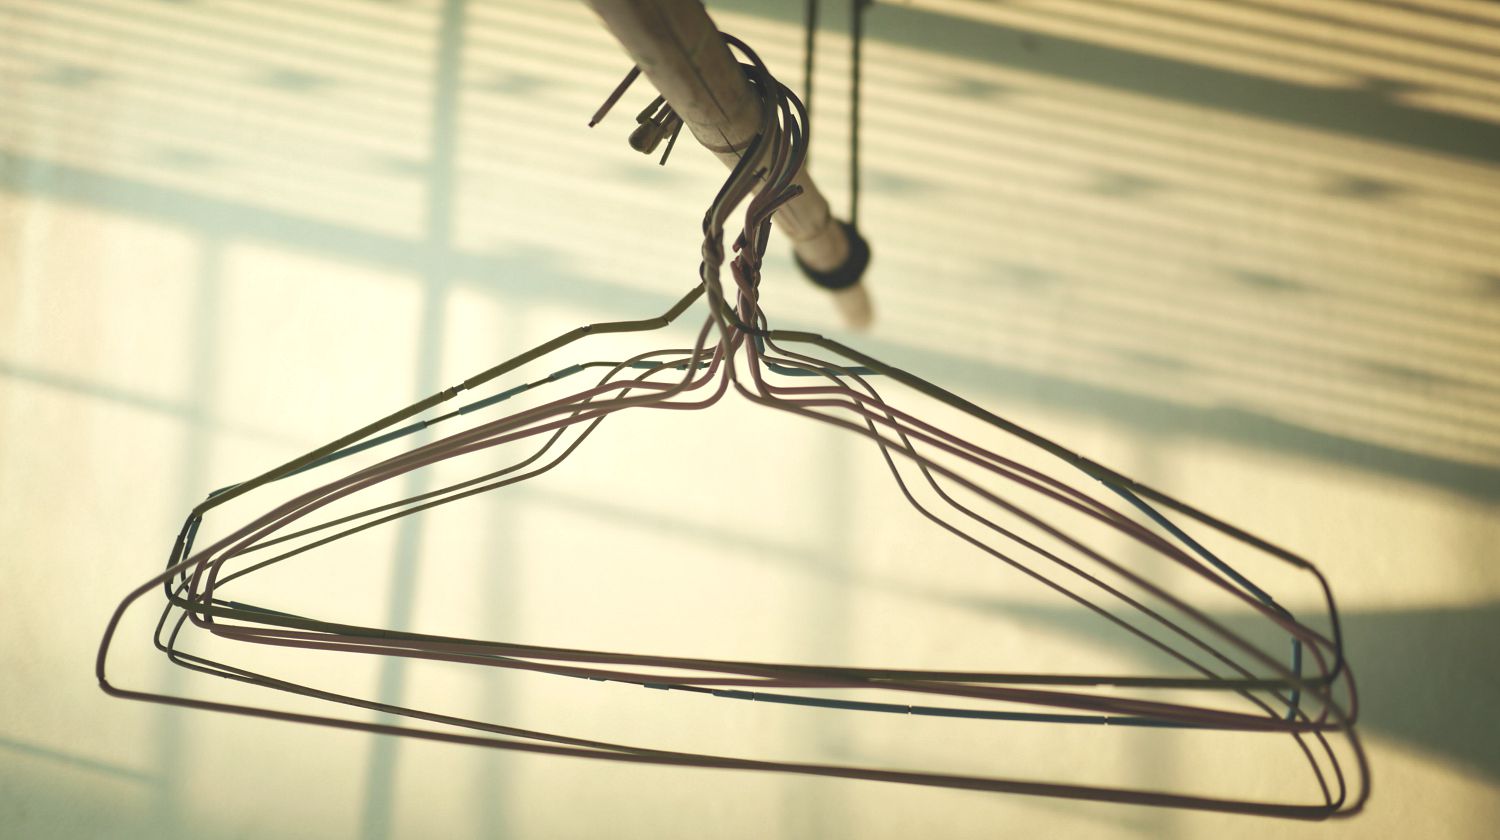 clothe-hanger-balcony-Wire-Coat-Hanger-ss-Feature.jpg